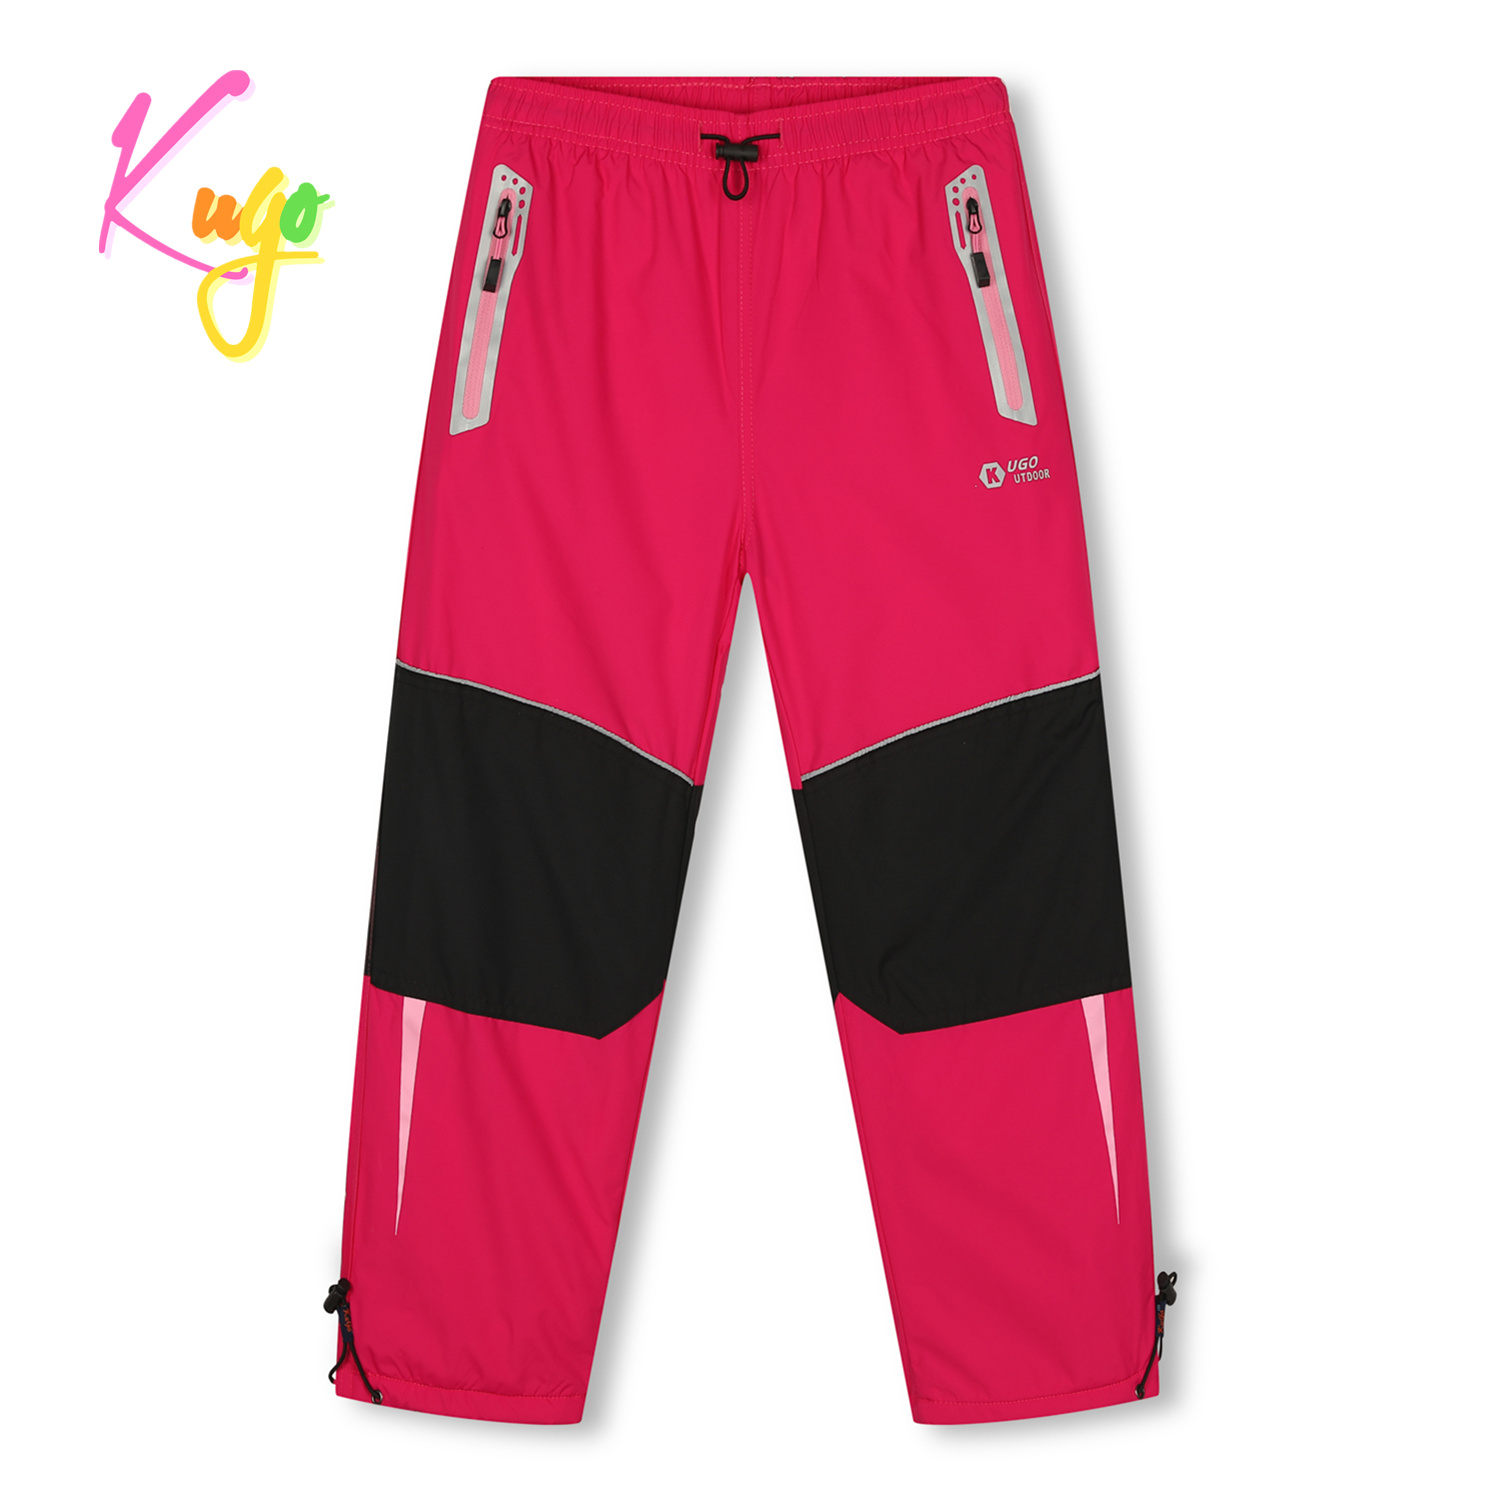 Dívčí šusťákové kalhoty, zateplené - KUGO DK7132, růžová Barva: Růžová, Velikost: 146